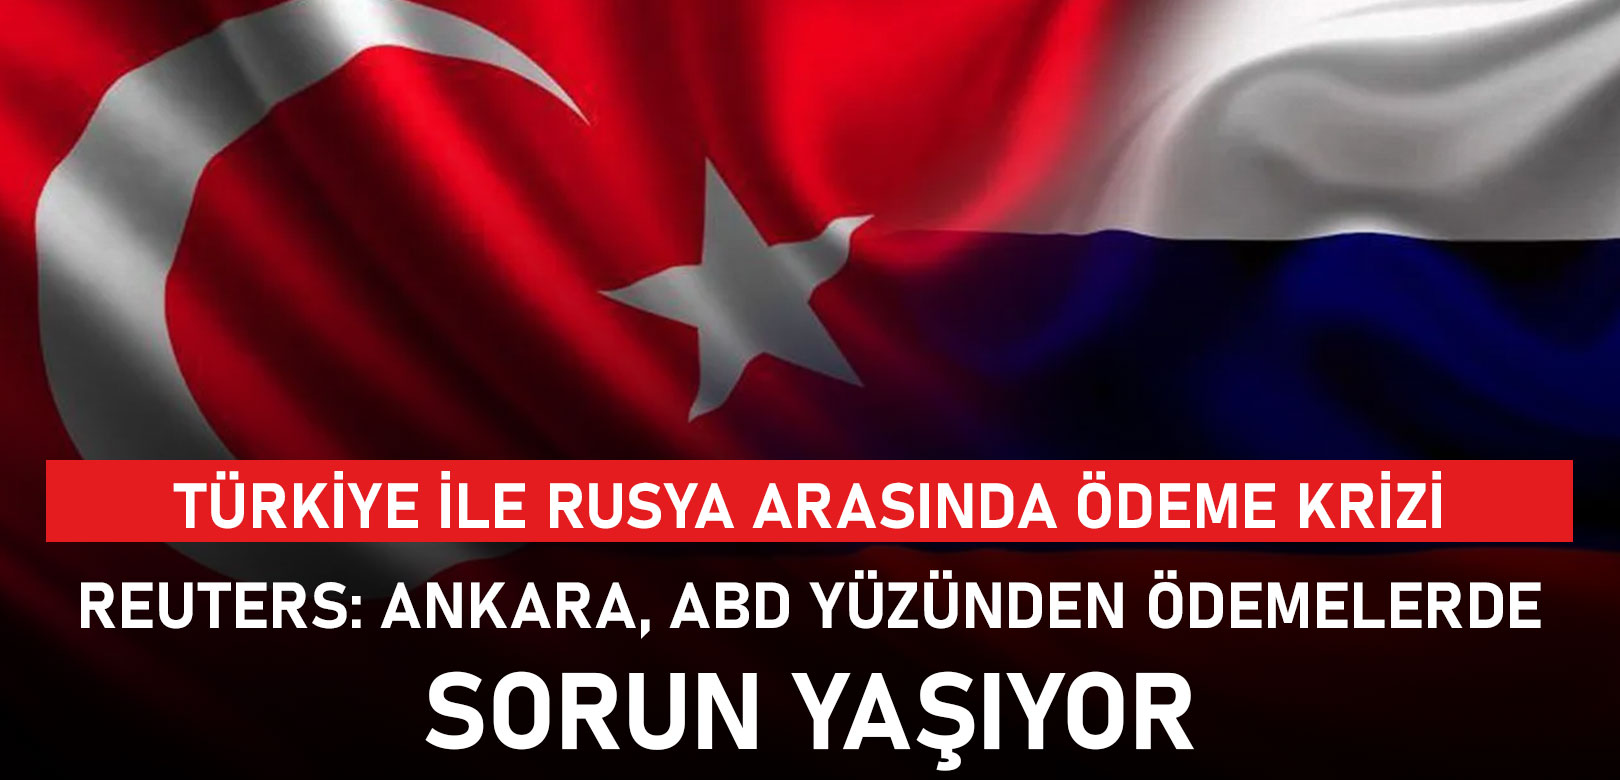 Reuters, Türkiye ile Rusya arasında ödeme krizi yaşandığını açıkladı